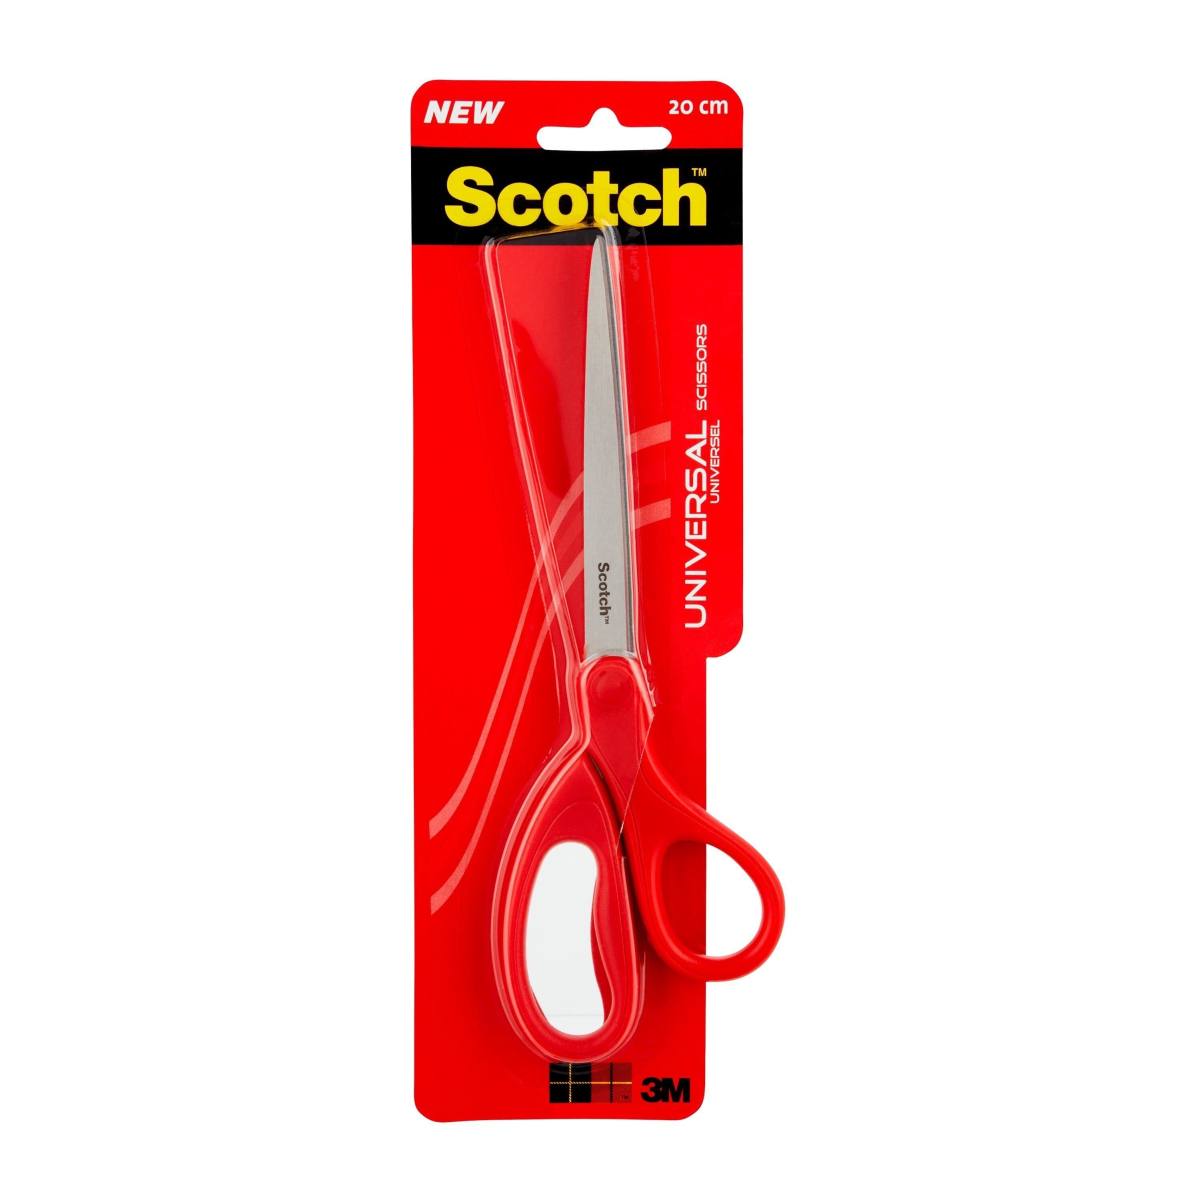 3M Scotch universal scissors red 1 per pack 20 cm